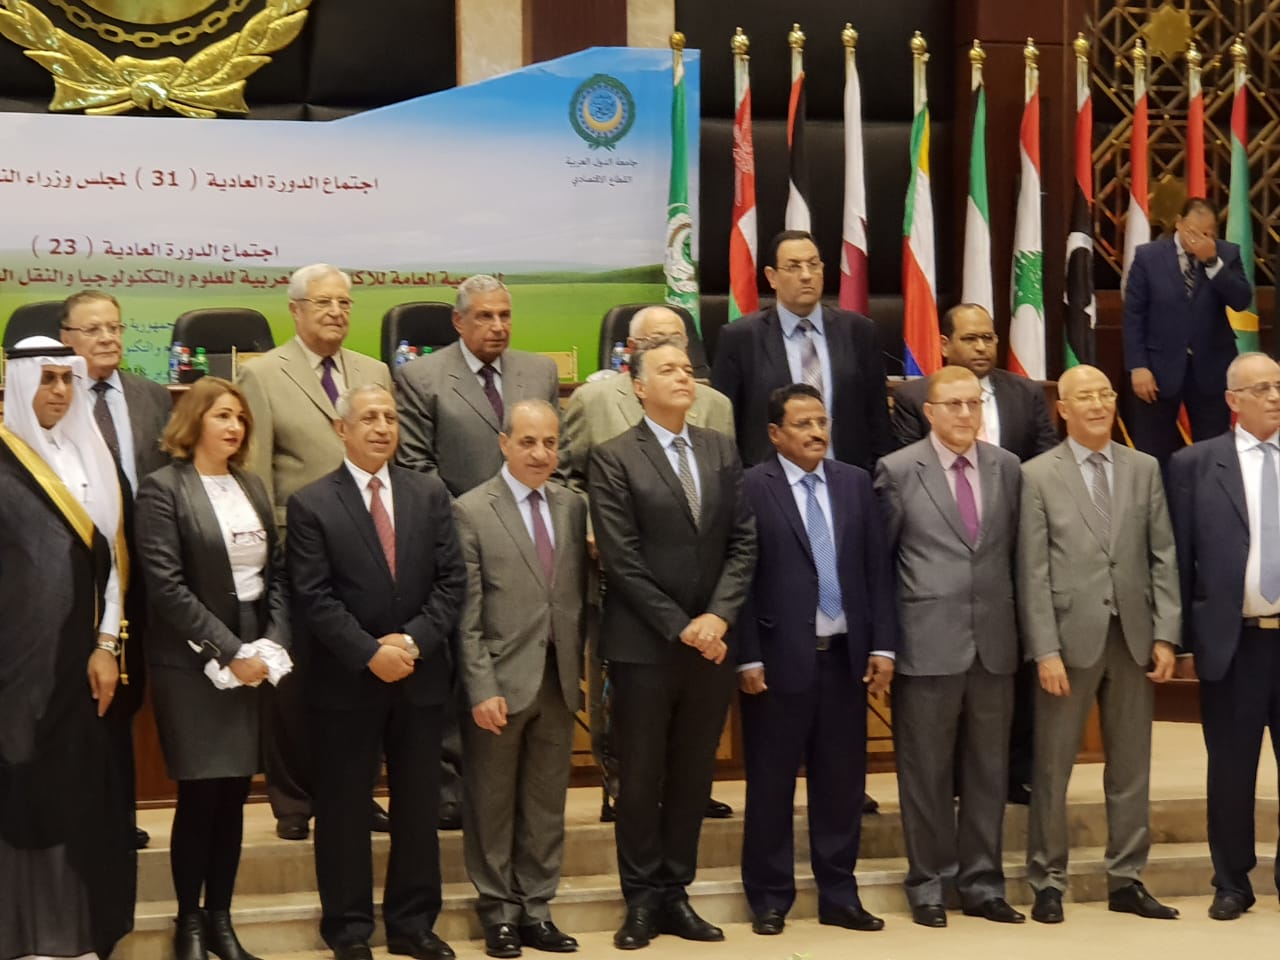  وزير النقل يفتتح  فعاليات اجتماع مجلس وزراء النقل العرب بمقر الأكاديمية العربية (4)